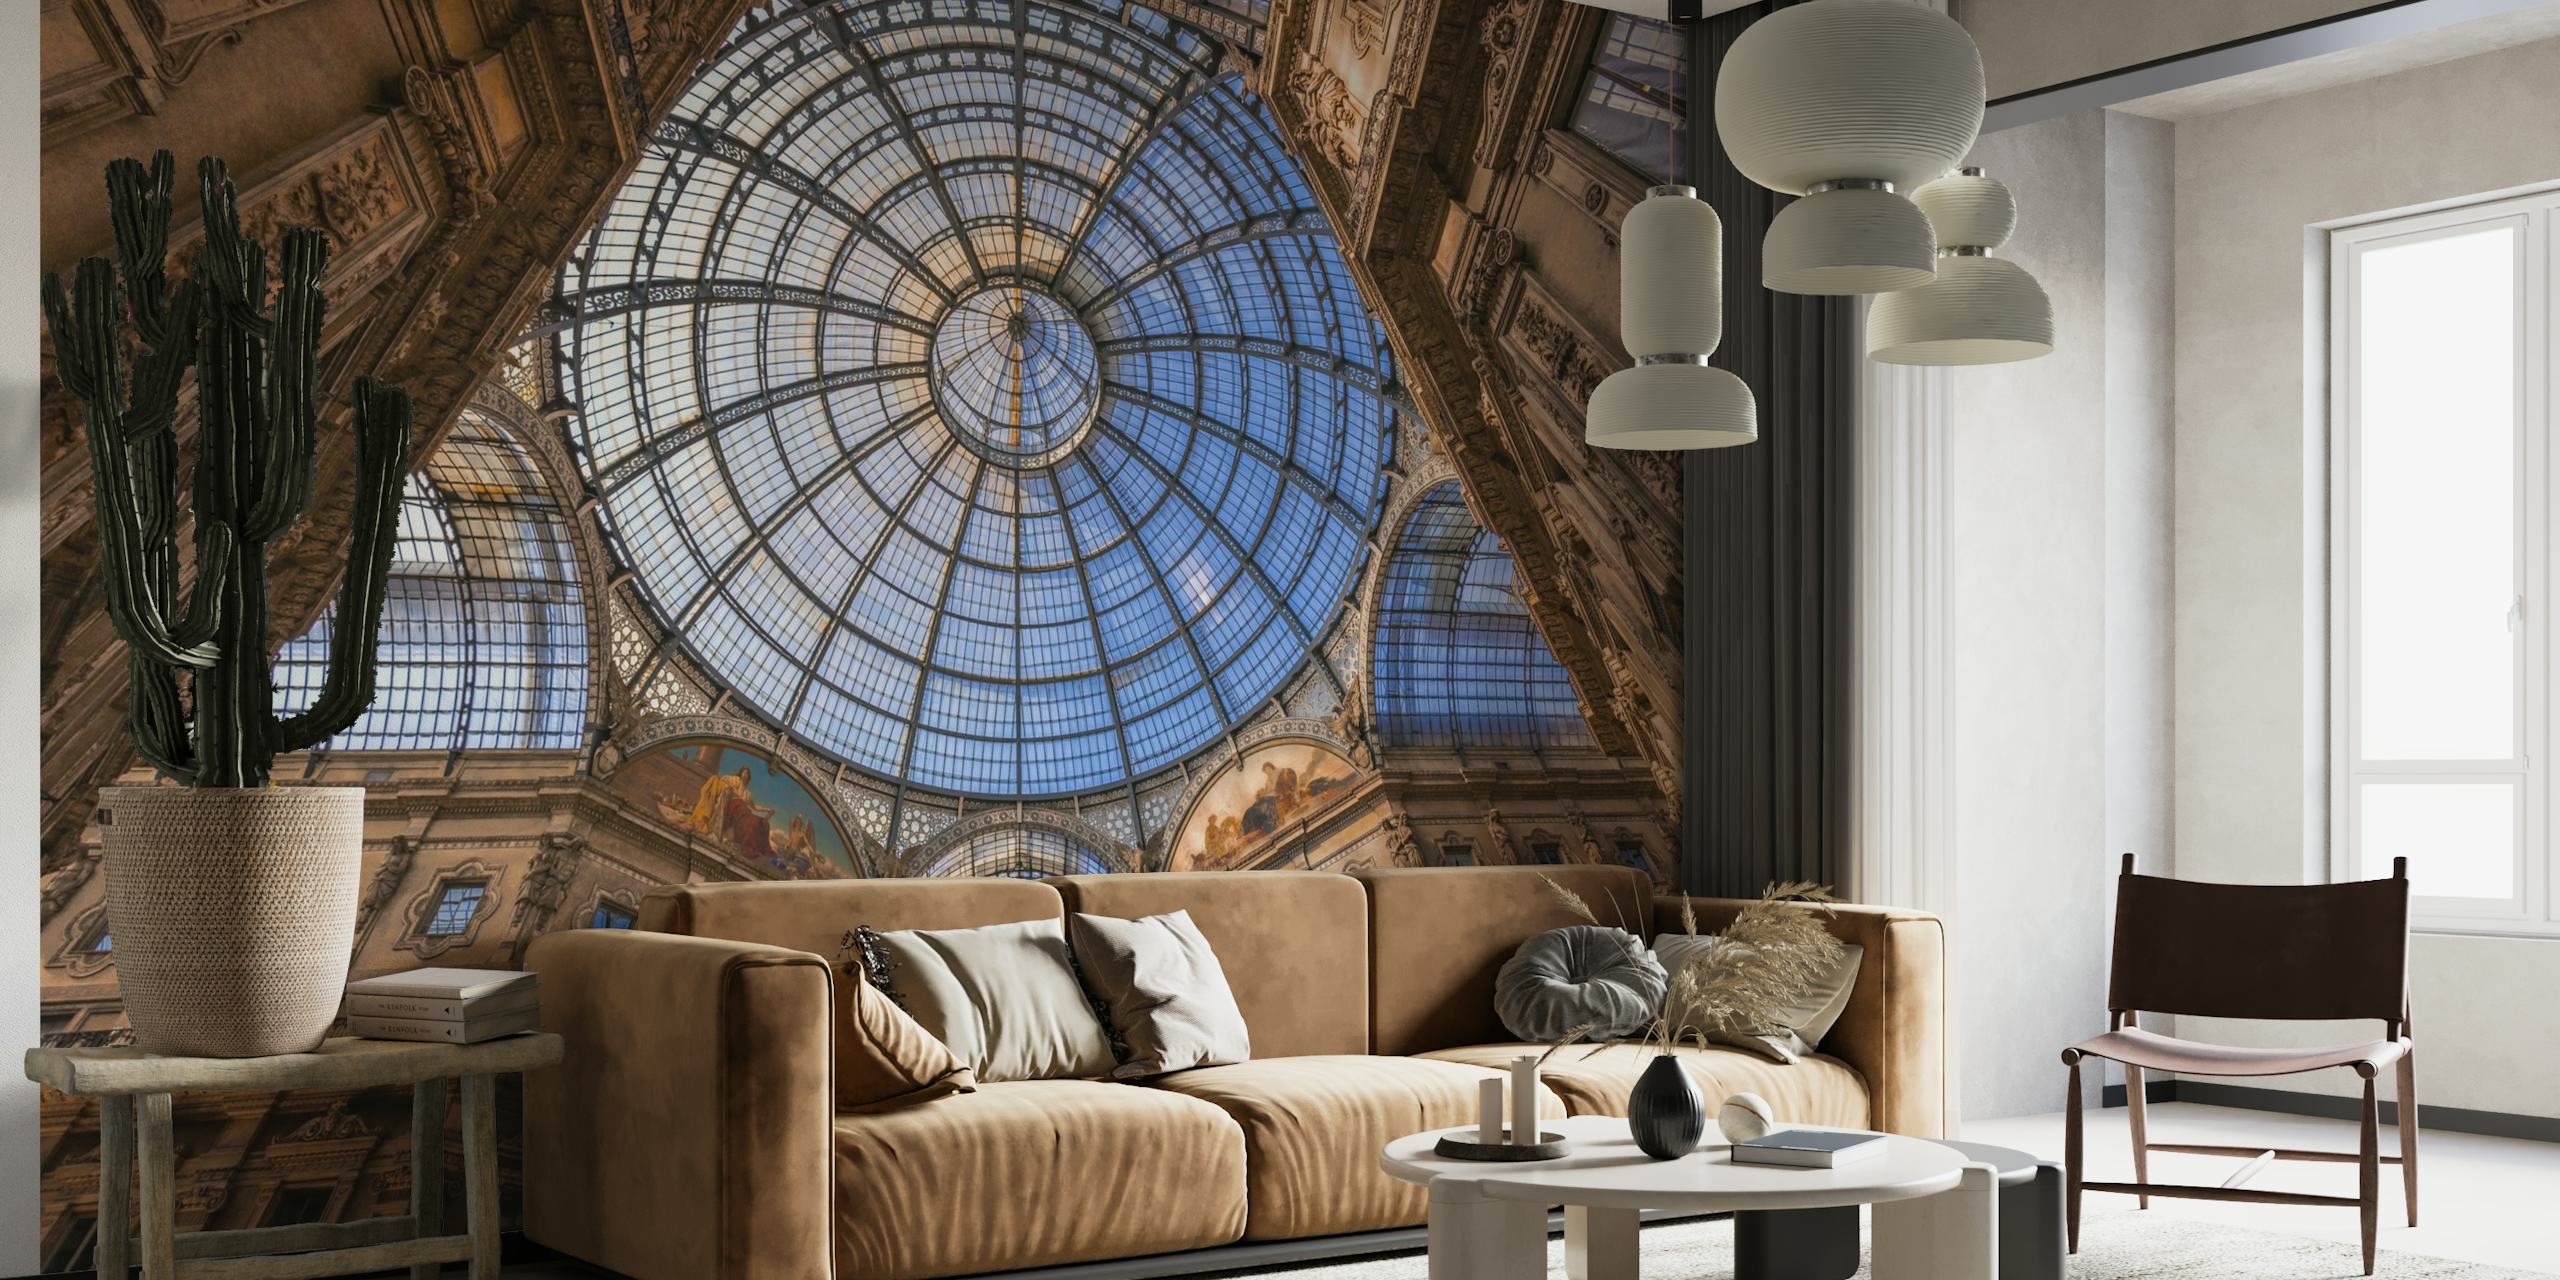 Il murale architettonico del soffitto a cupola nei toni del blu e del beige, esalta l'arredamento della stanza con un tocco maestoso.